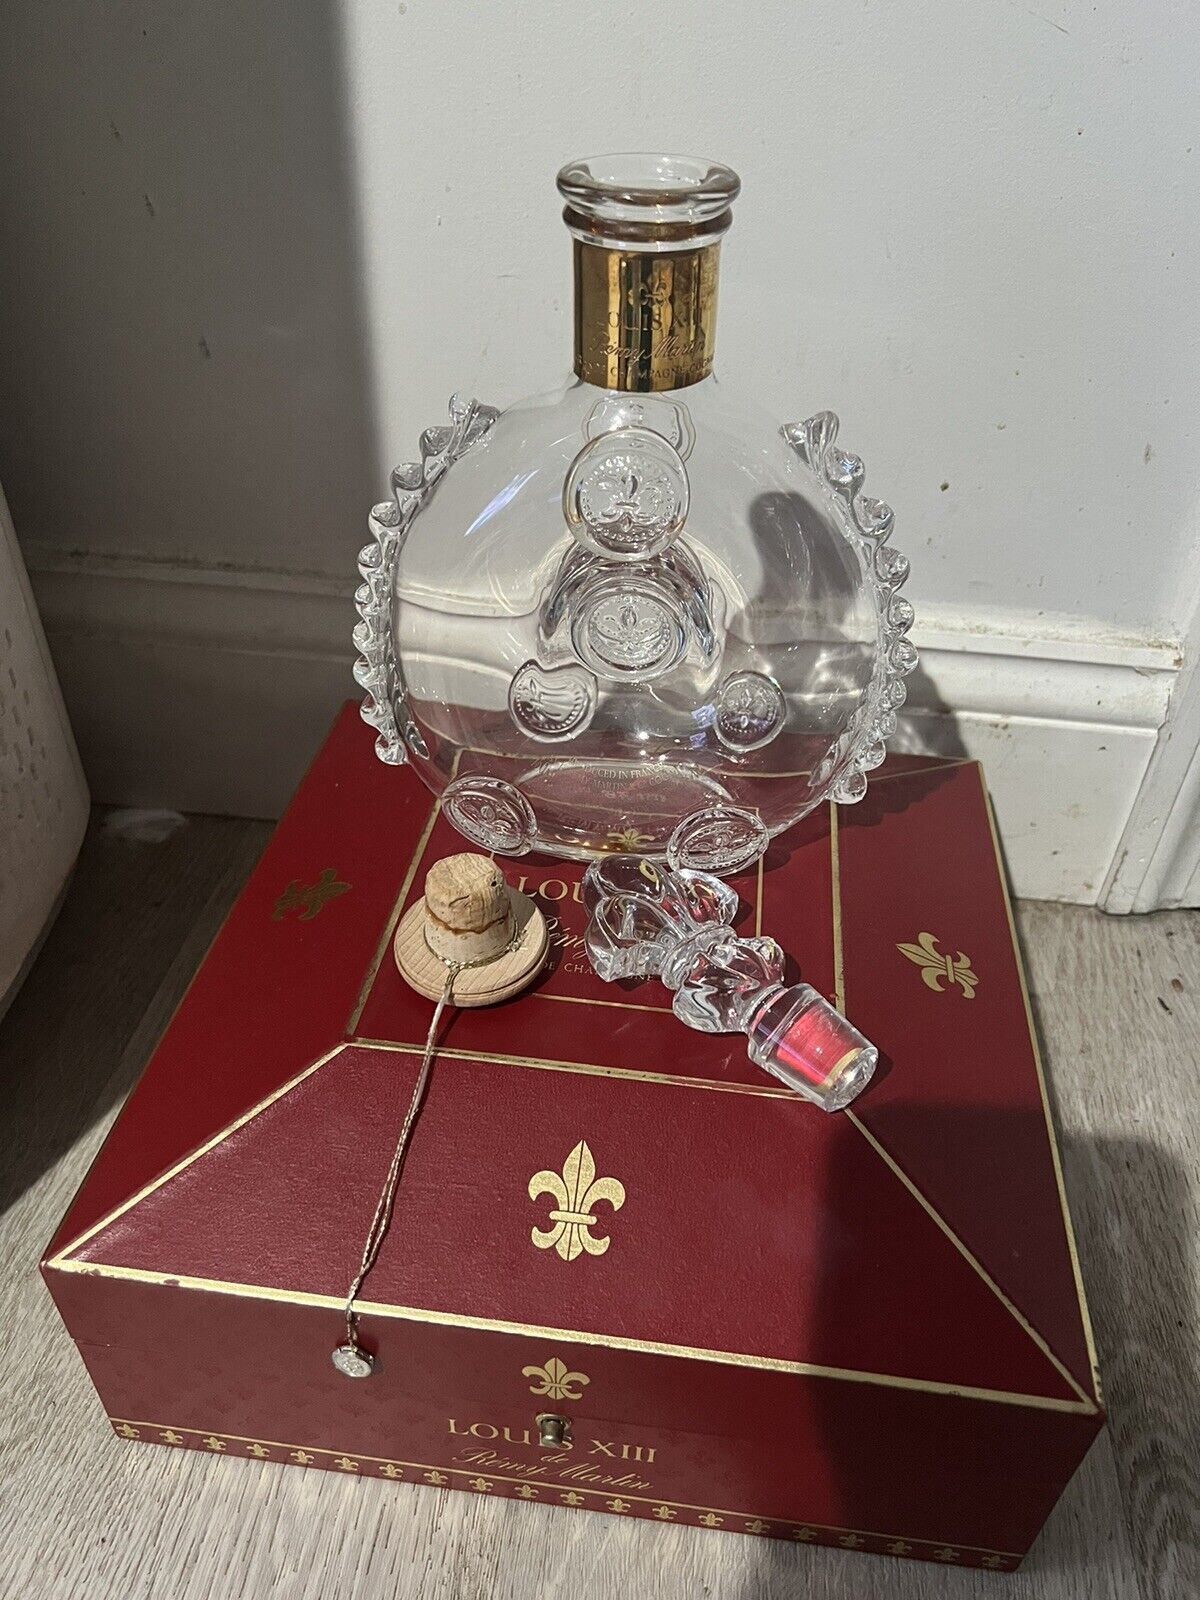 Remy Martin Louis XIII Cognac Crystal Empty 750ml Bottle w/ Casket Box